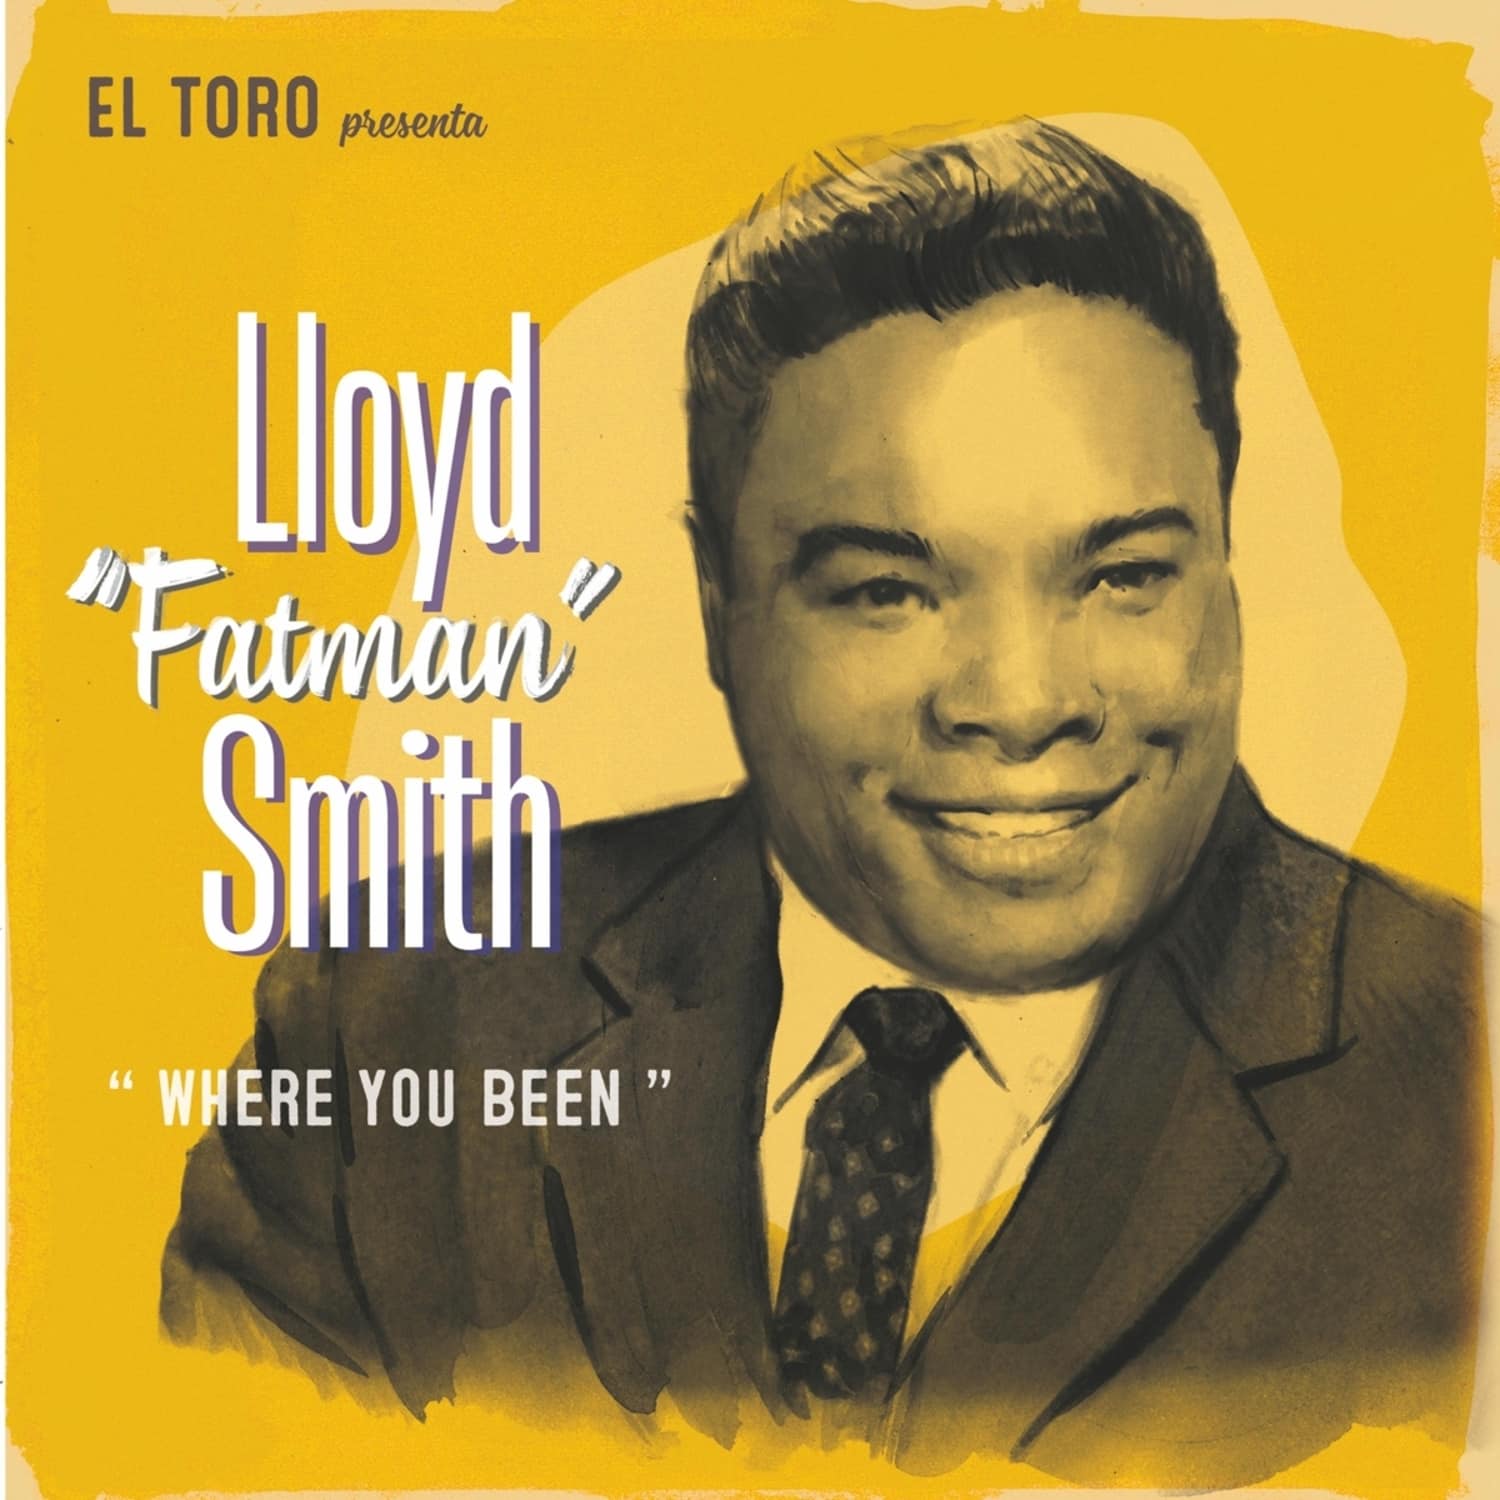  Floyd Fatman Smith - WHERE YOU BEEN EP 